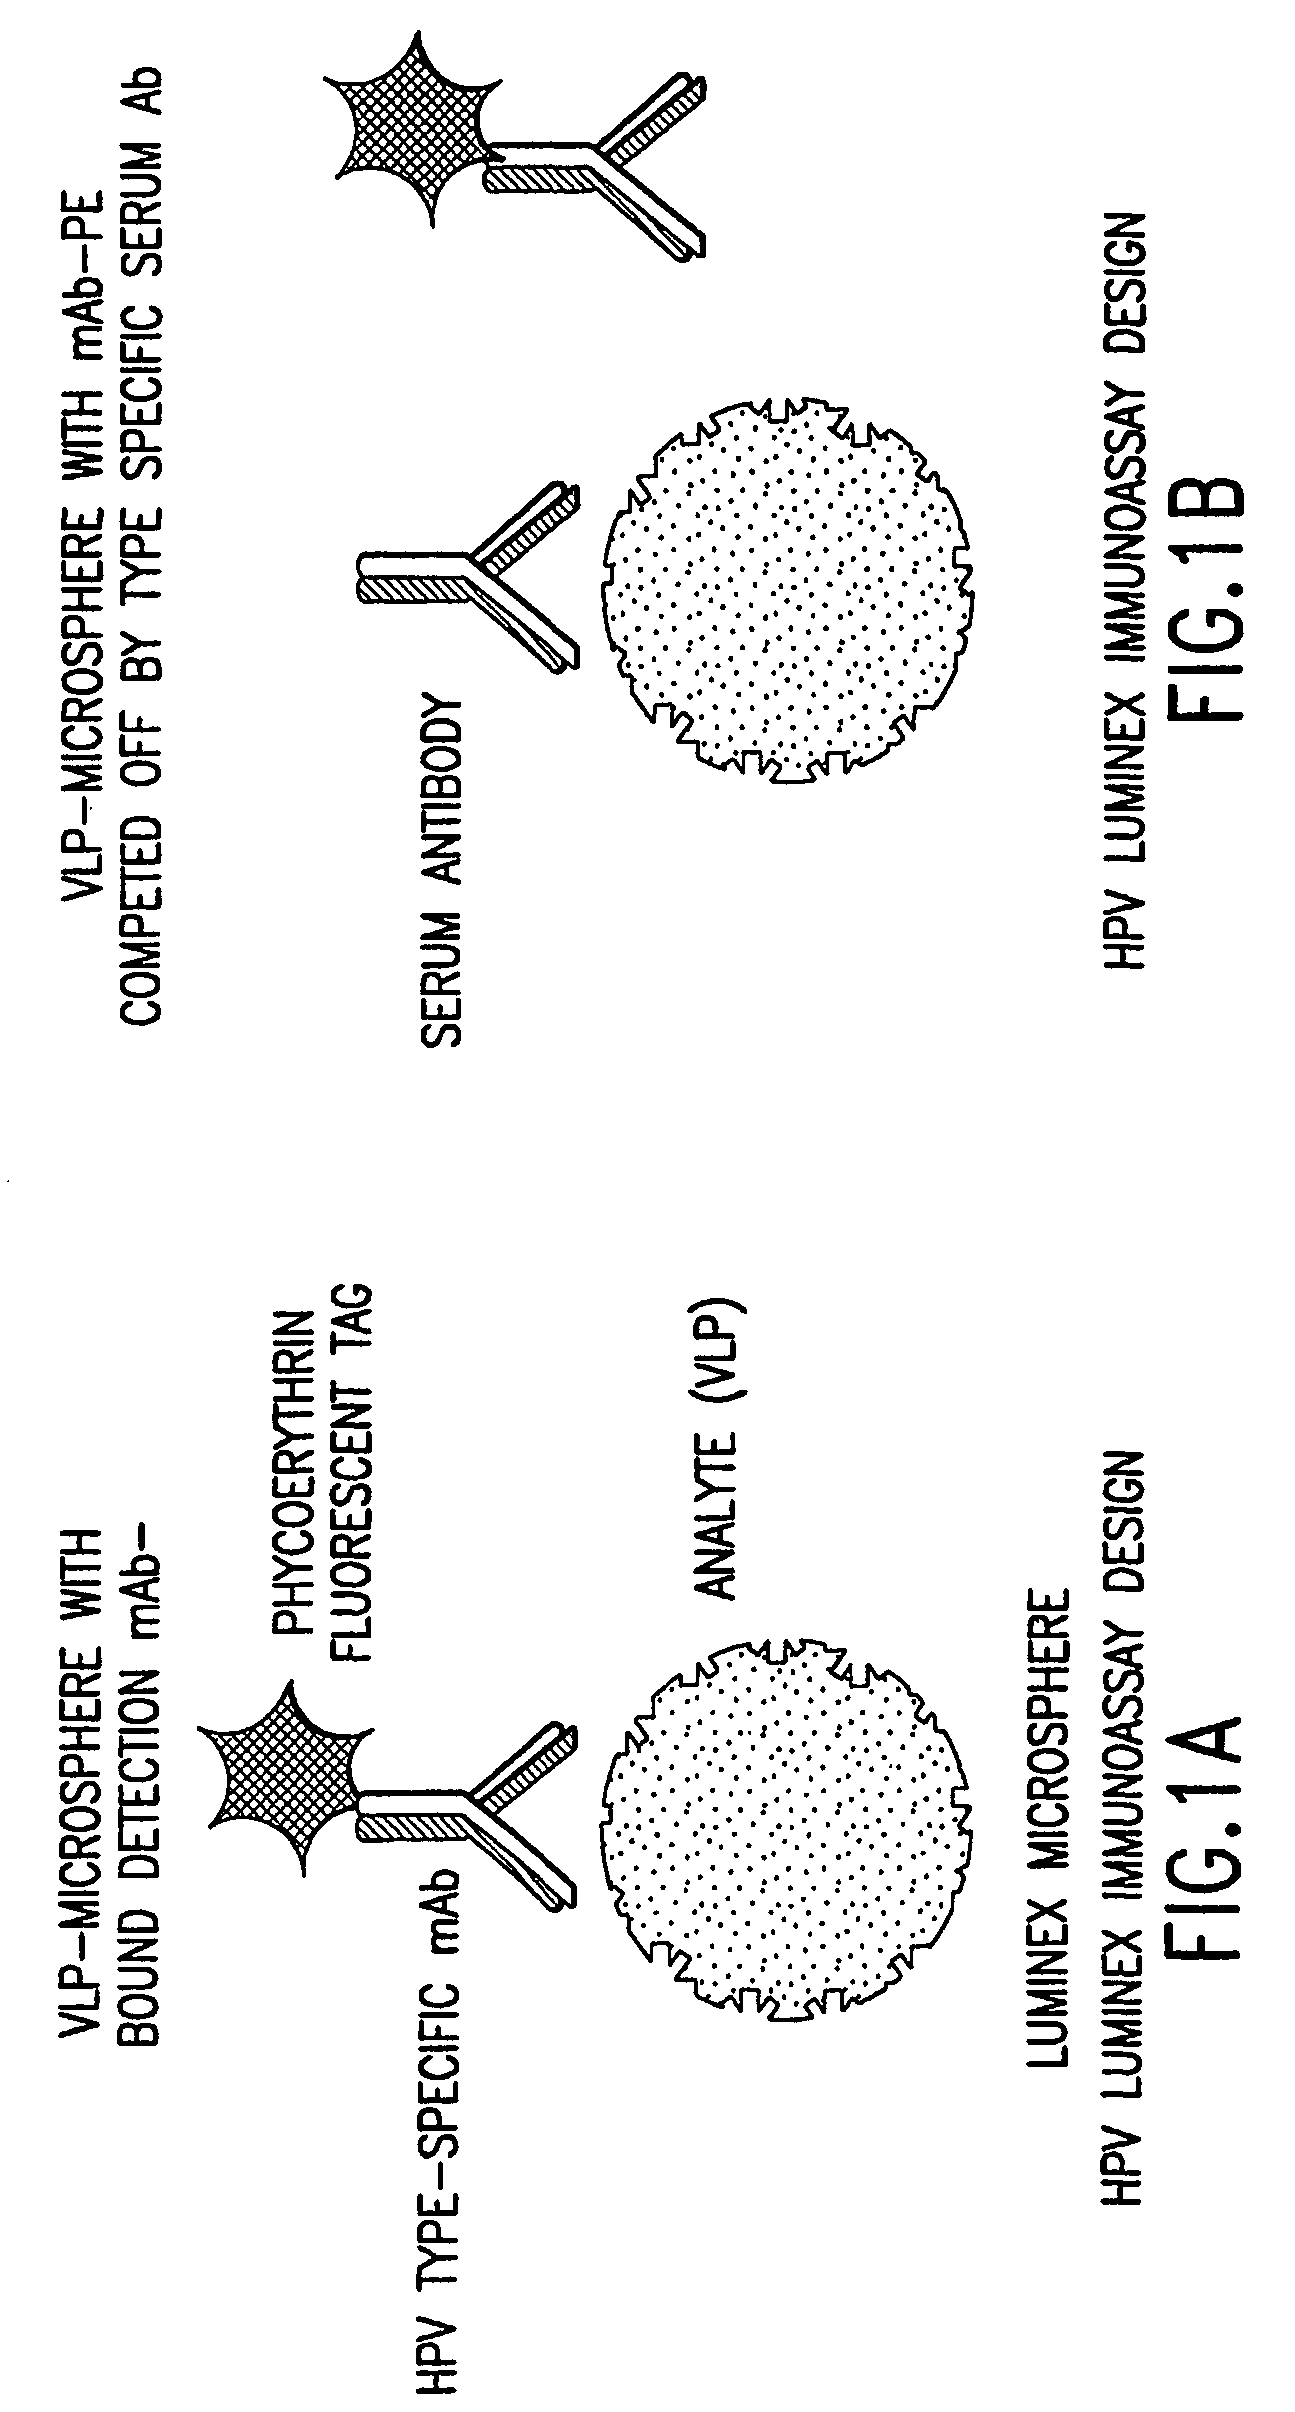 Human papillomavirus multiplexed assay